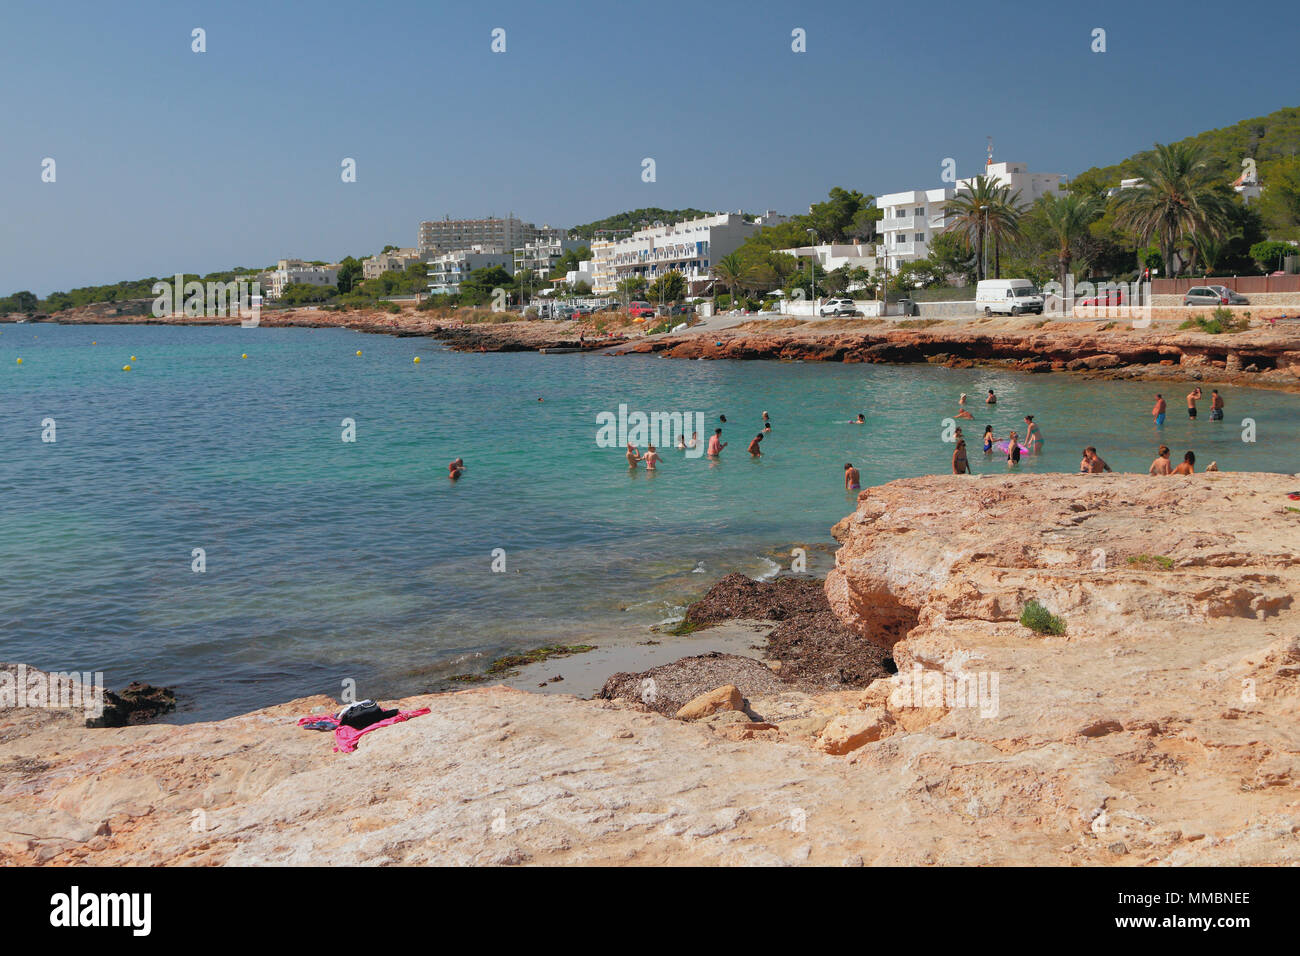 Bay and beach Calo des Moro. San Antonio, Ibiza, Spain Stock Photo